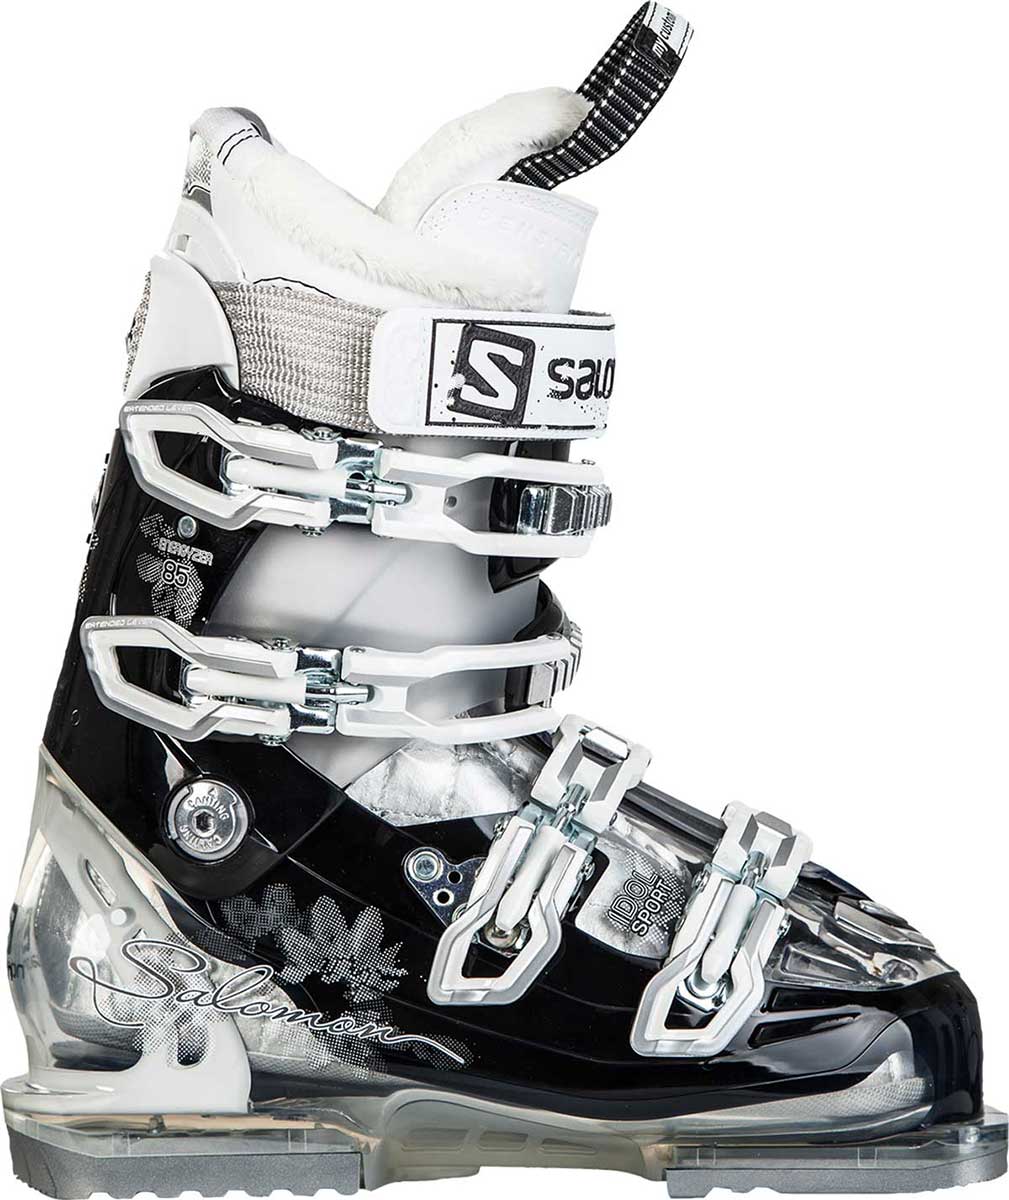 IDOL SPORT - Alpine ski boots